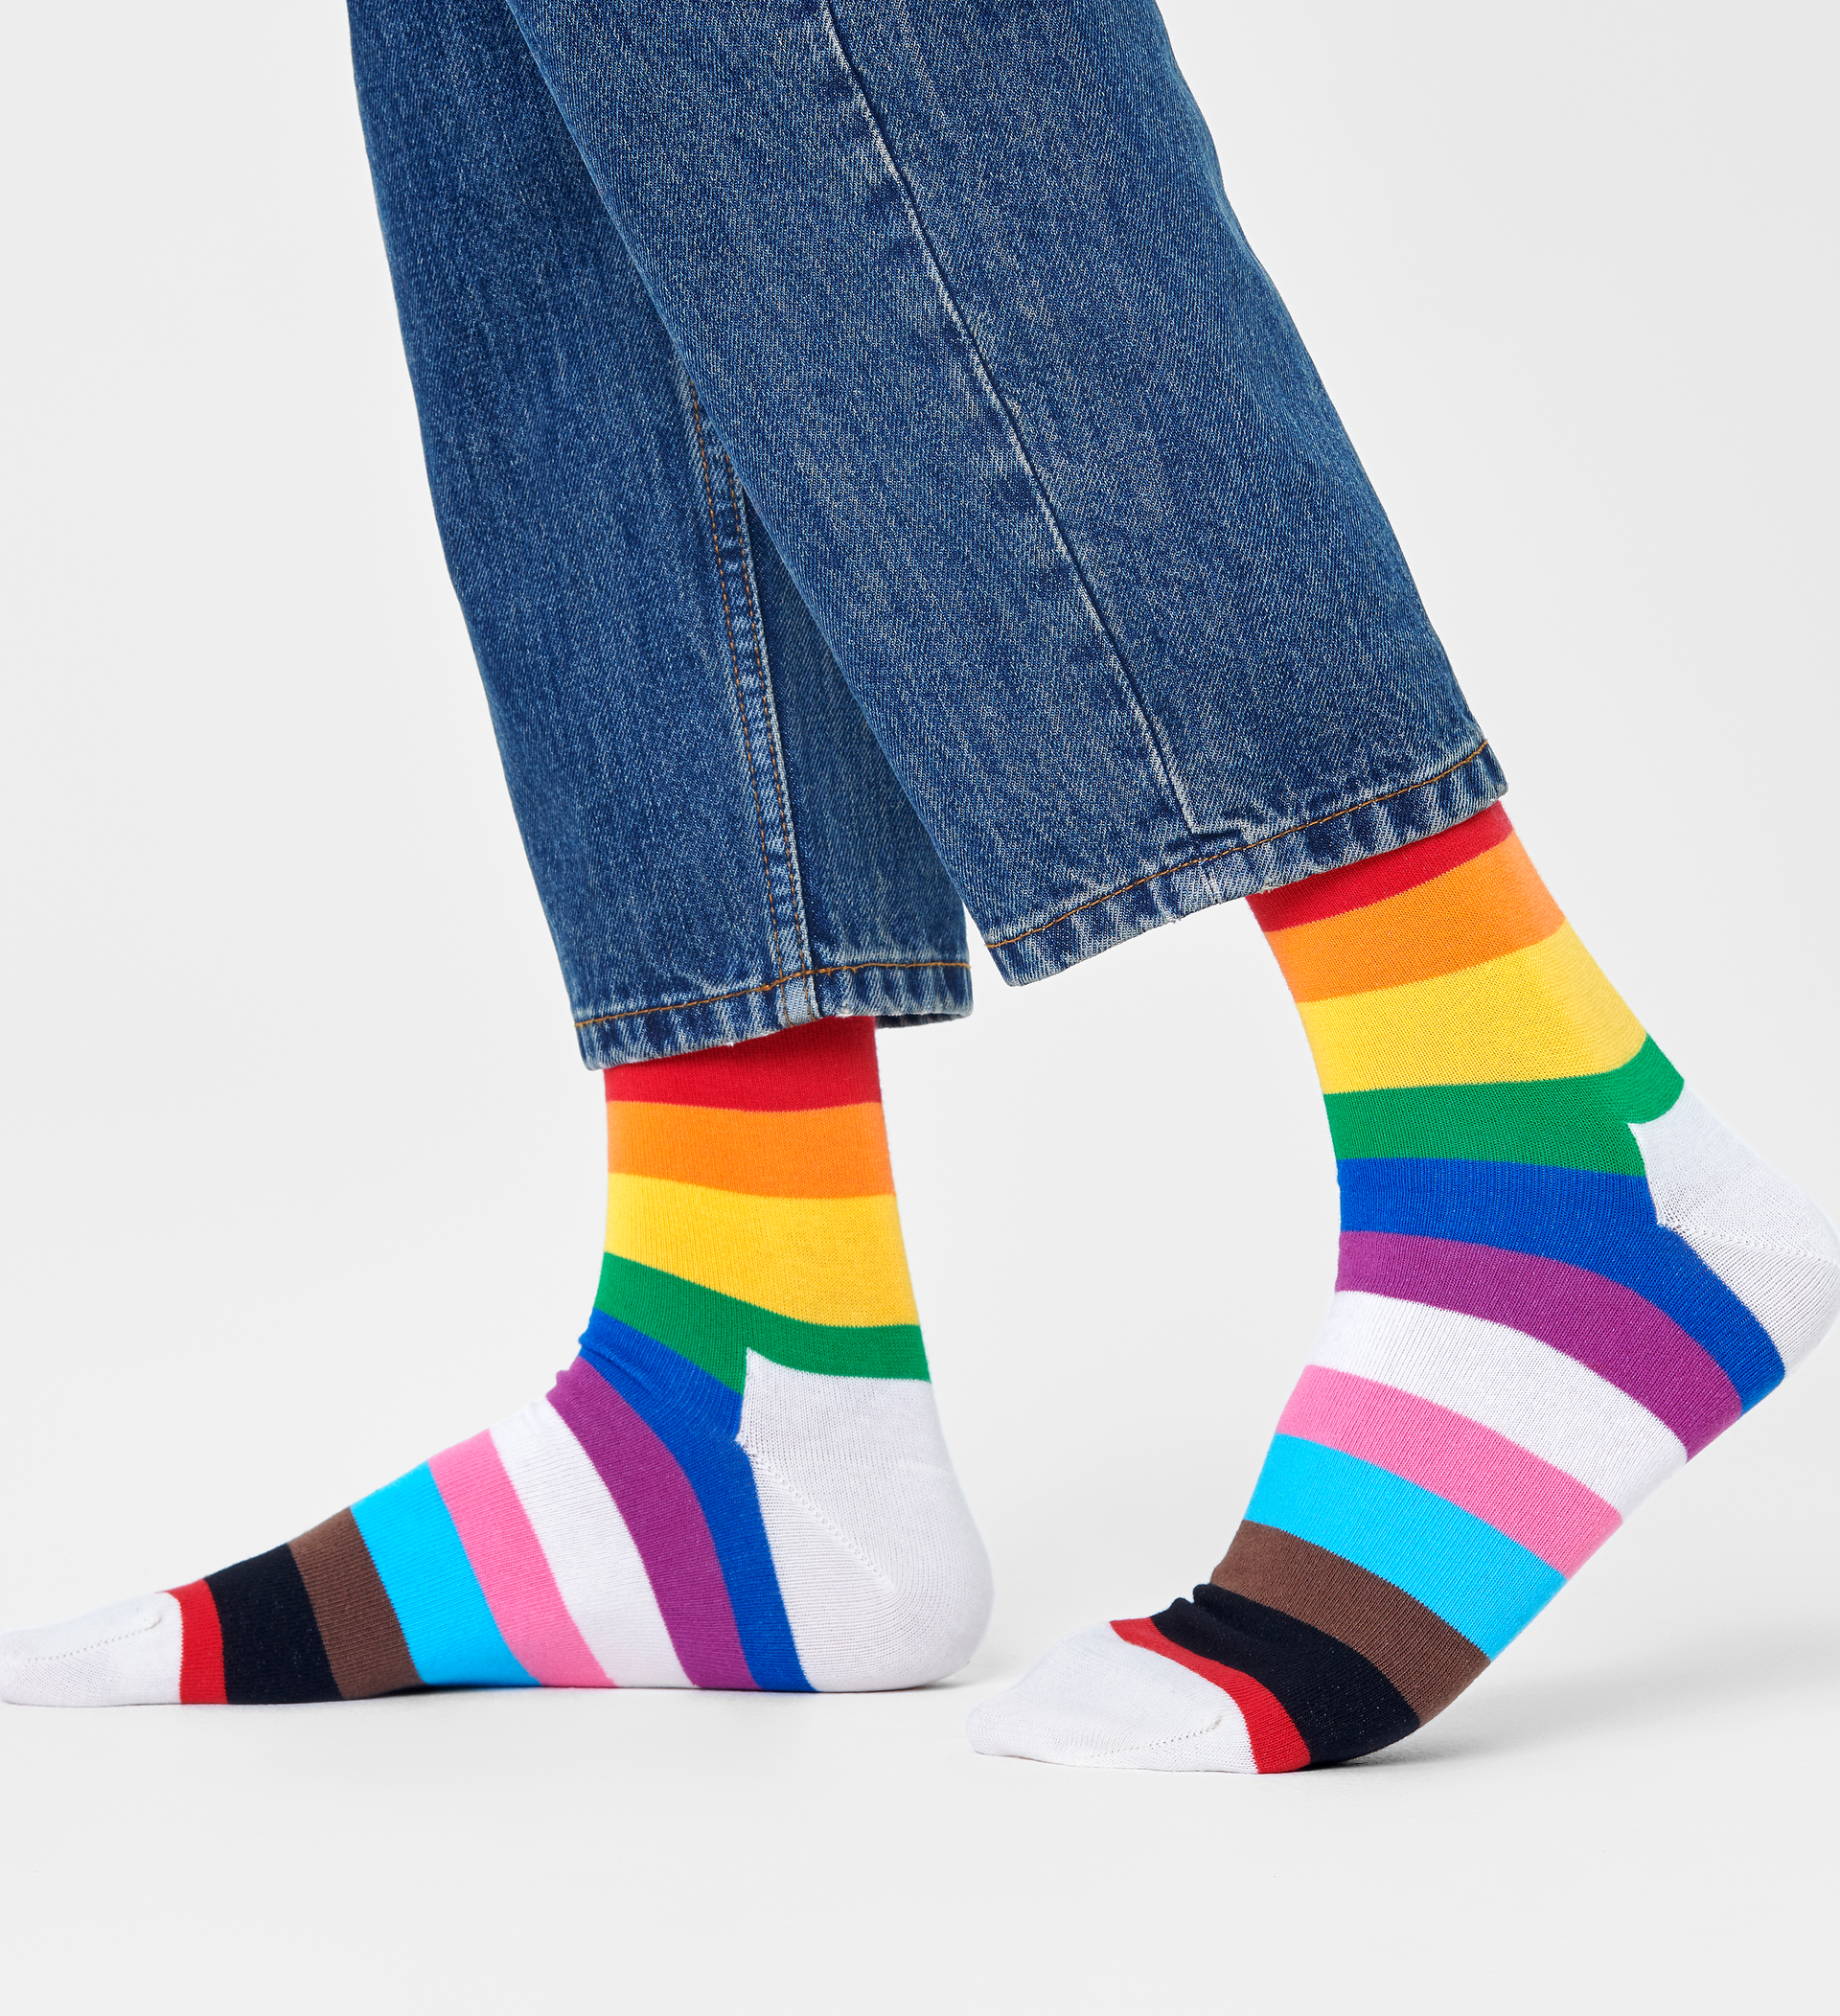 Unicorn socks.Perth Sock shop.Novelty socks.Happy socks.Funky socks. 